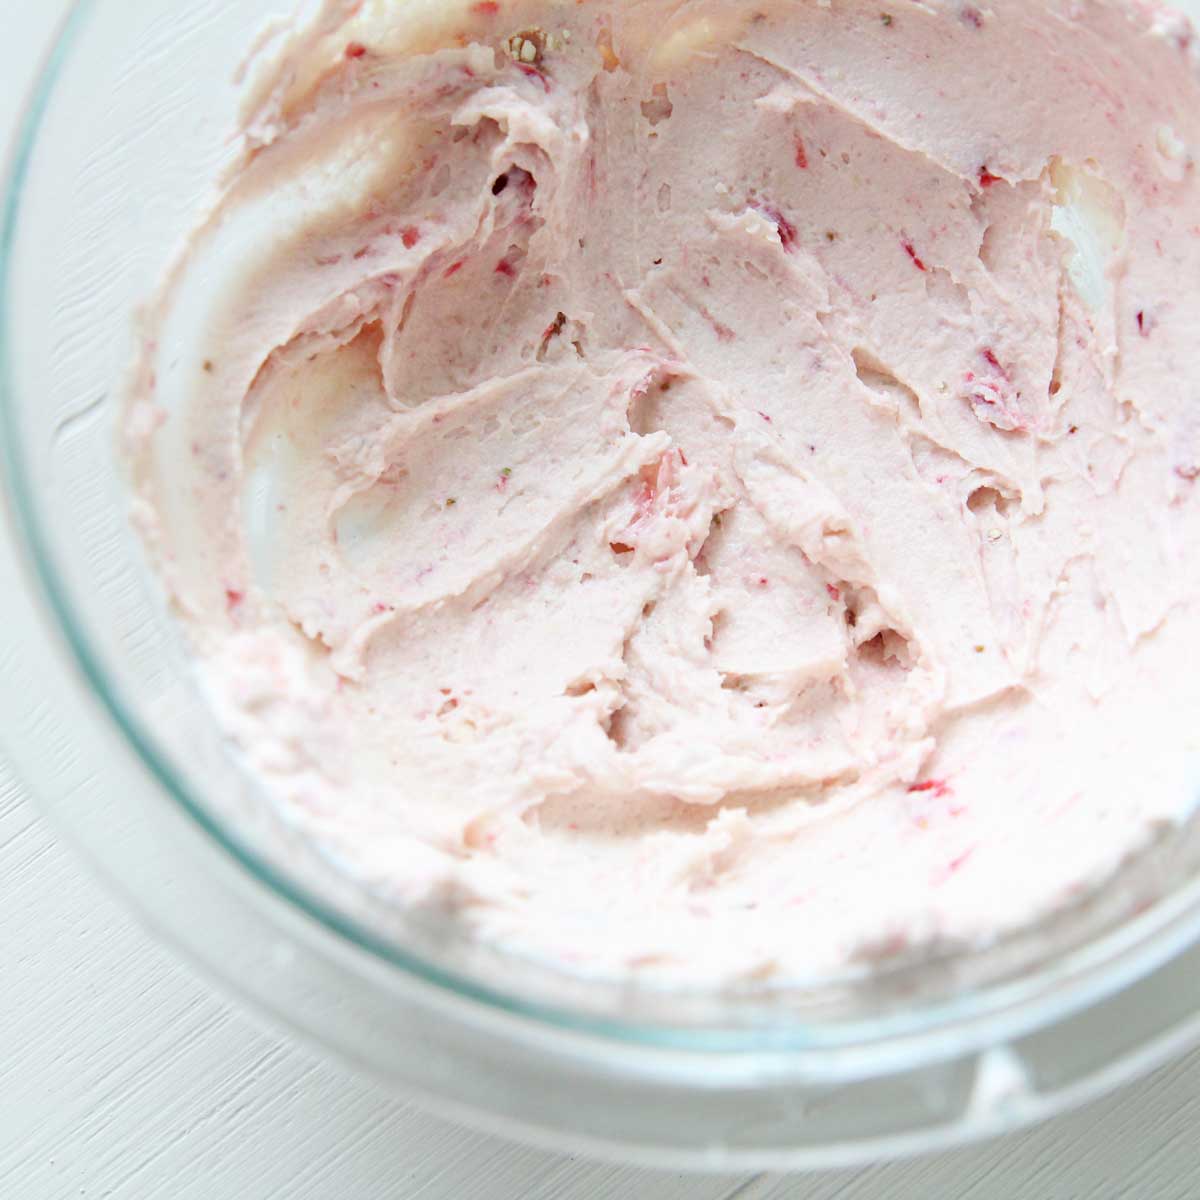 Fresh Strawberry Greek Yogurt Frosting (Healthy, Low Fat Recipe) - Strawberry Greek Yogurt Frosting